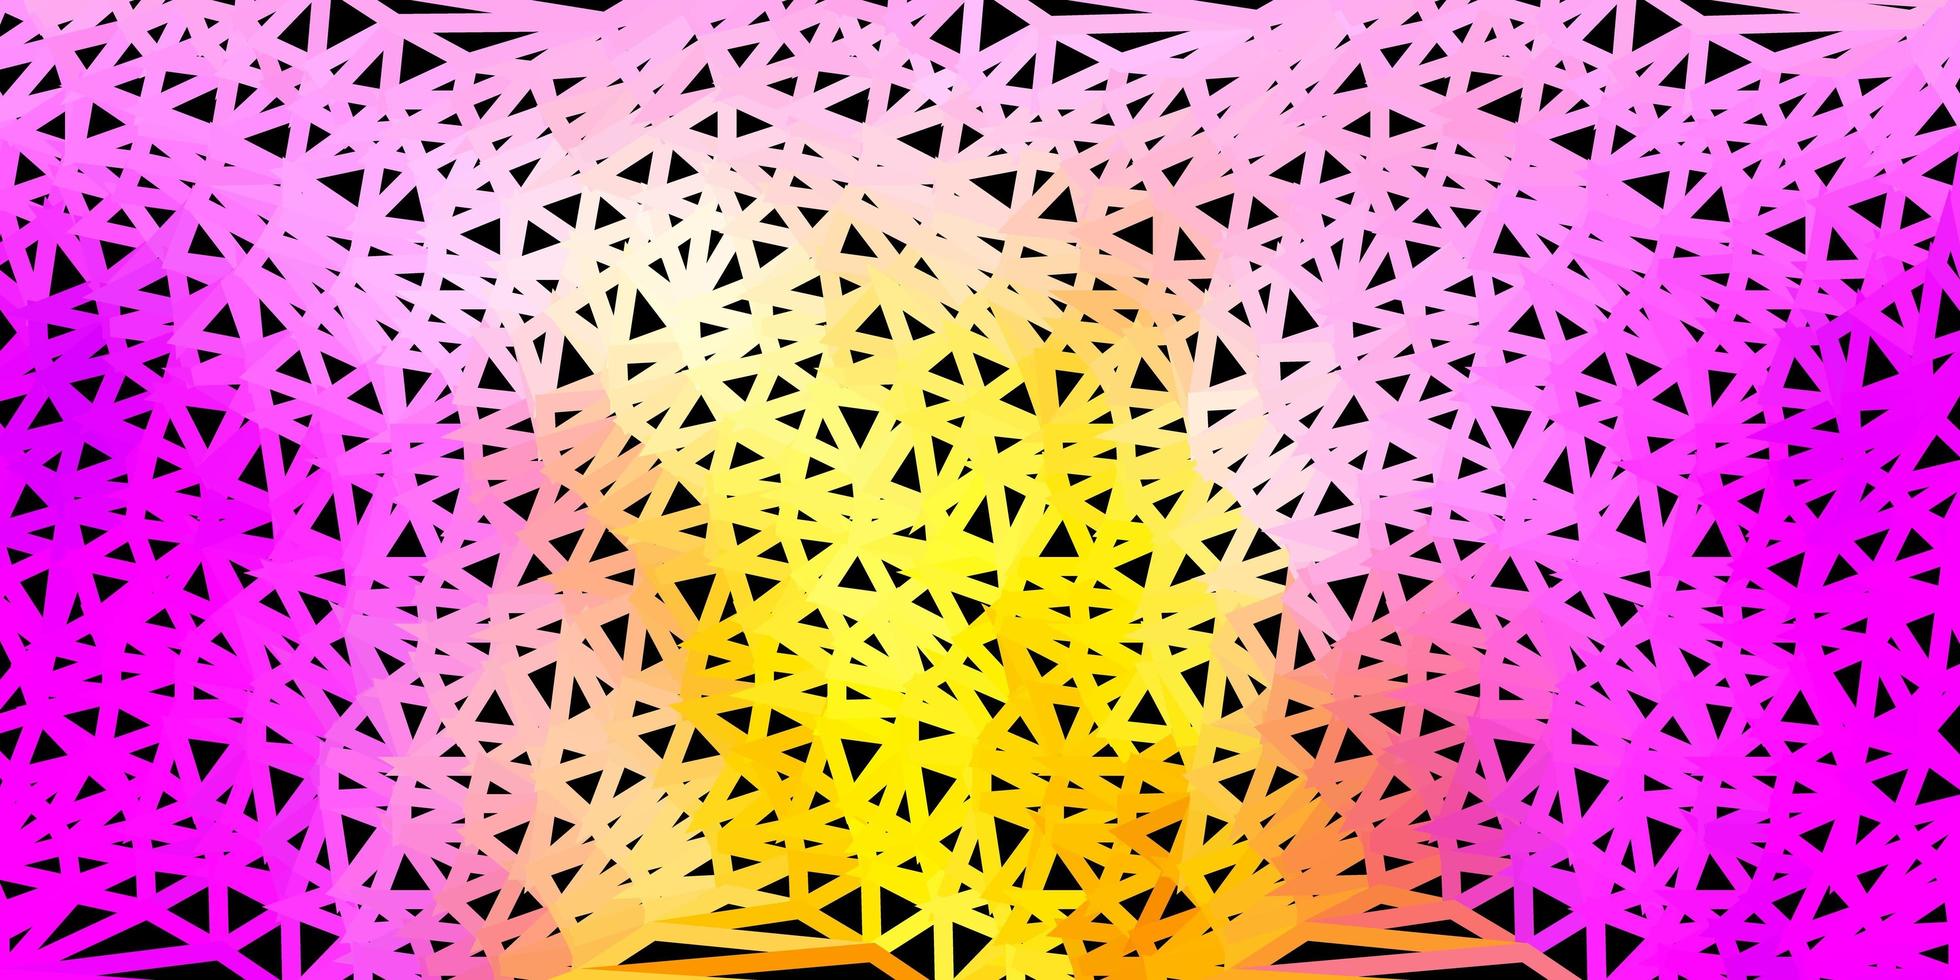 desenho poligonal geométrico de vetor rosa e amarelo claro.